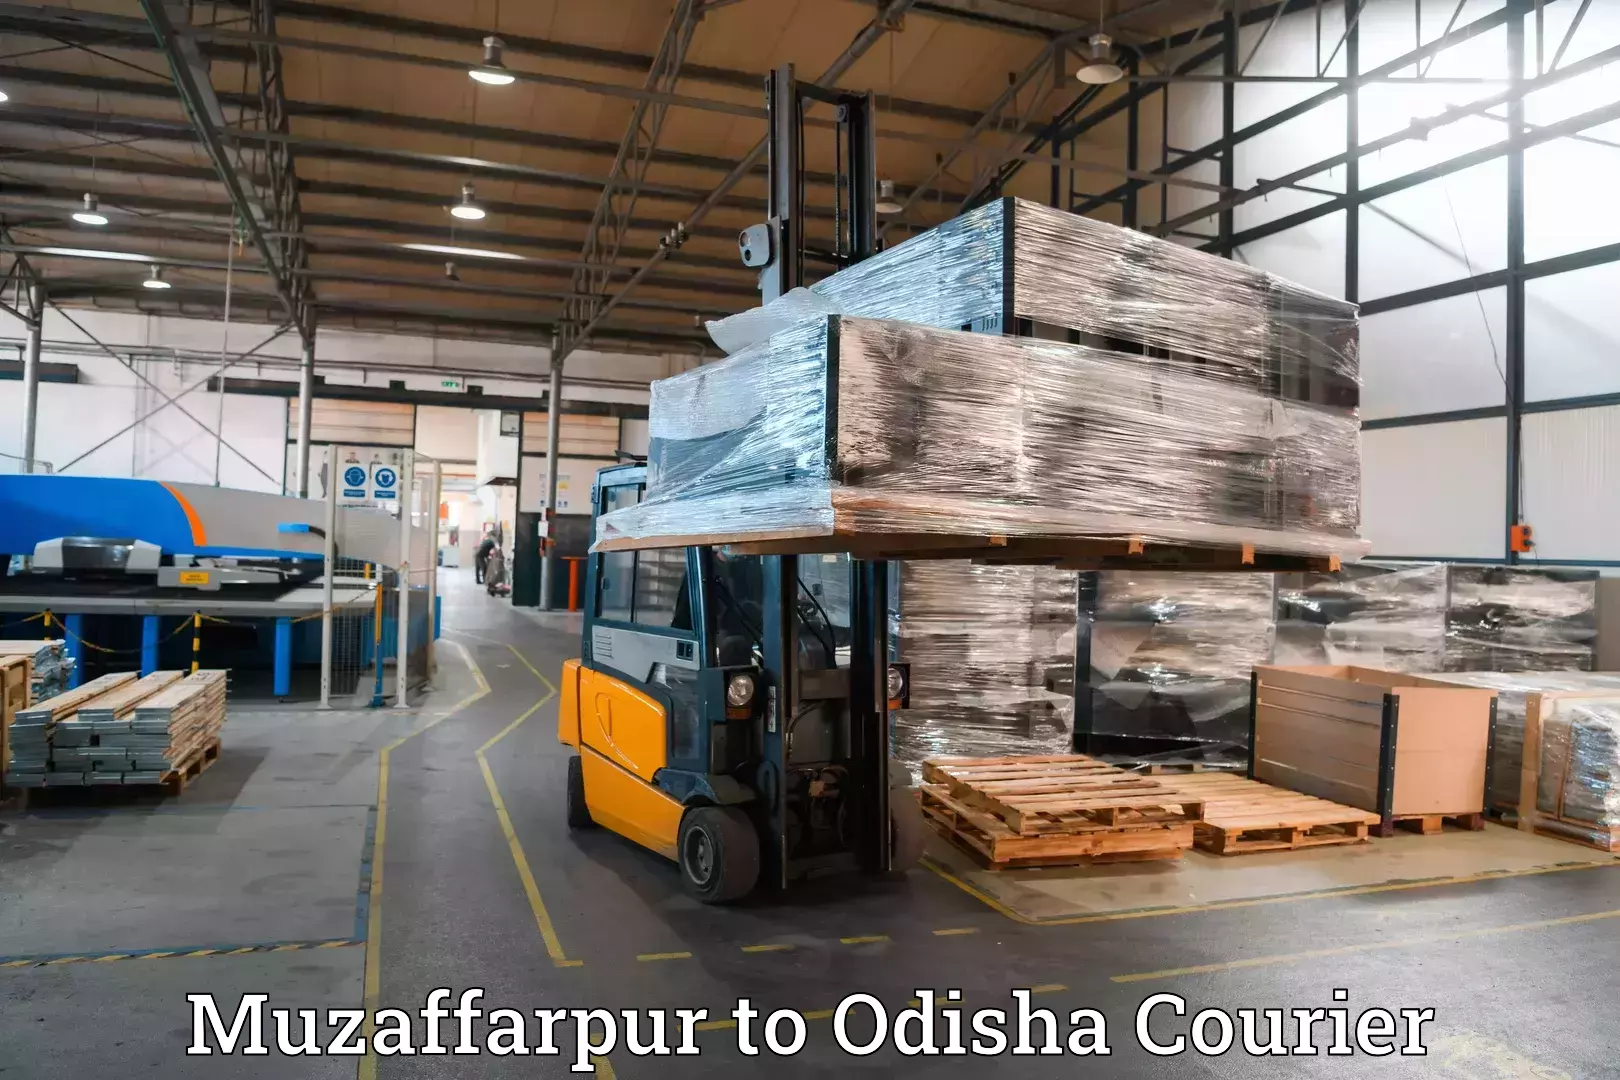 Luggage shipment tracking Muzaffarpur to Balikuda